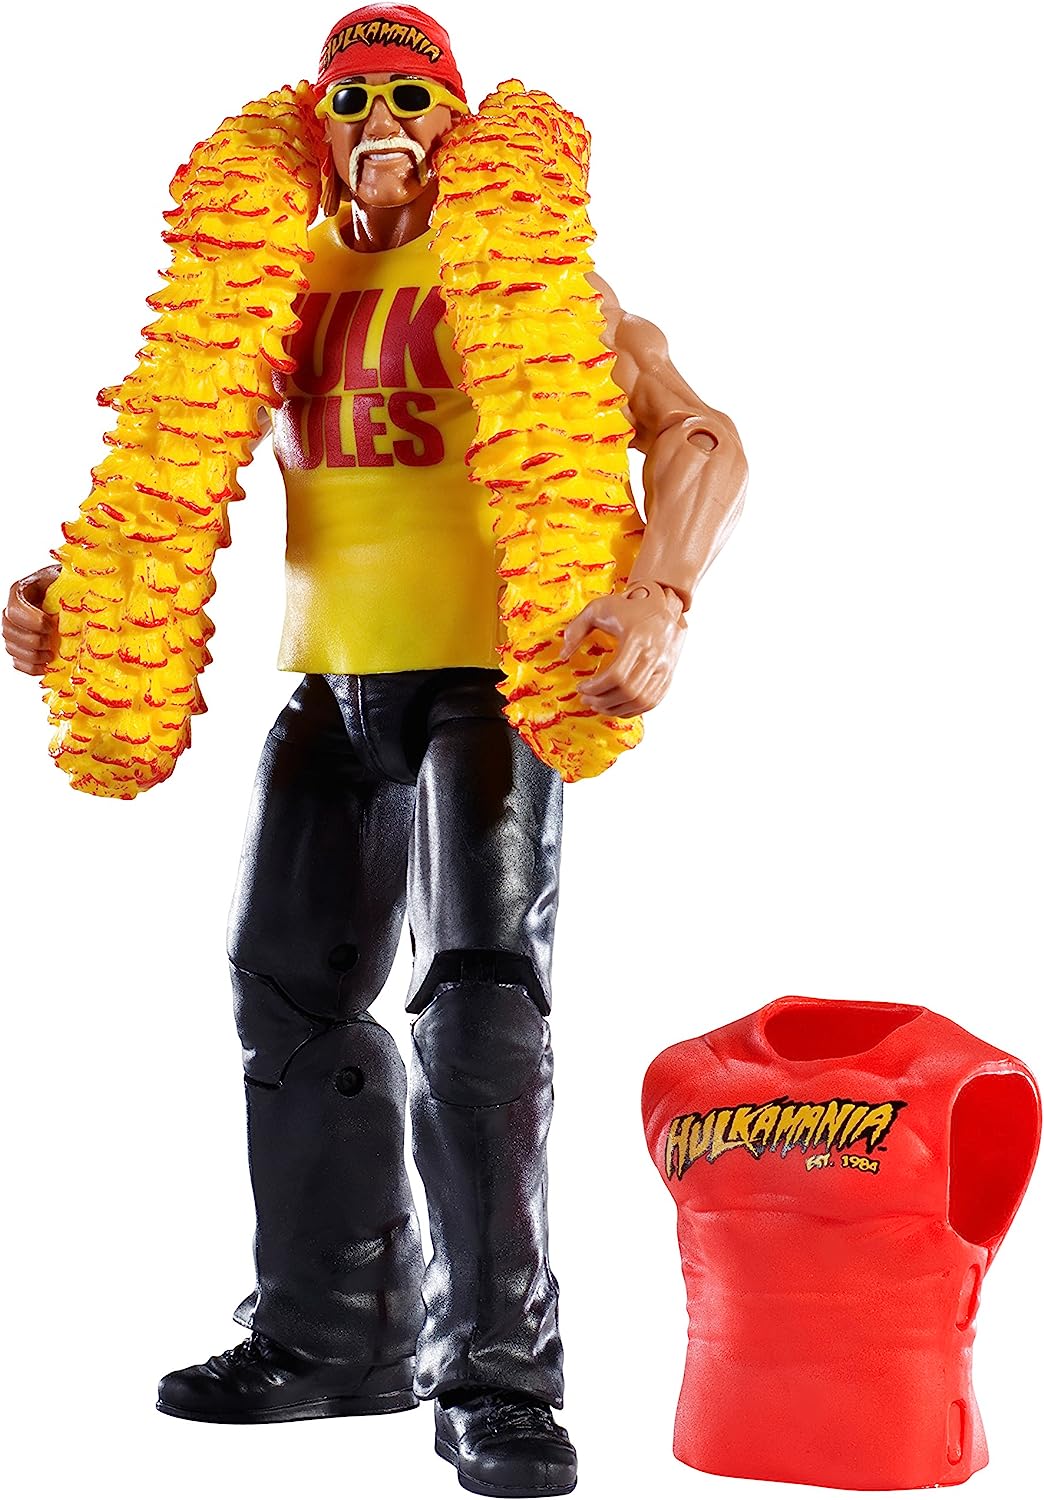 Mattel WWE Elite Collection Series #34 Hulk Hogan